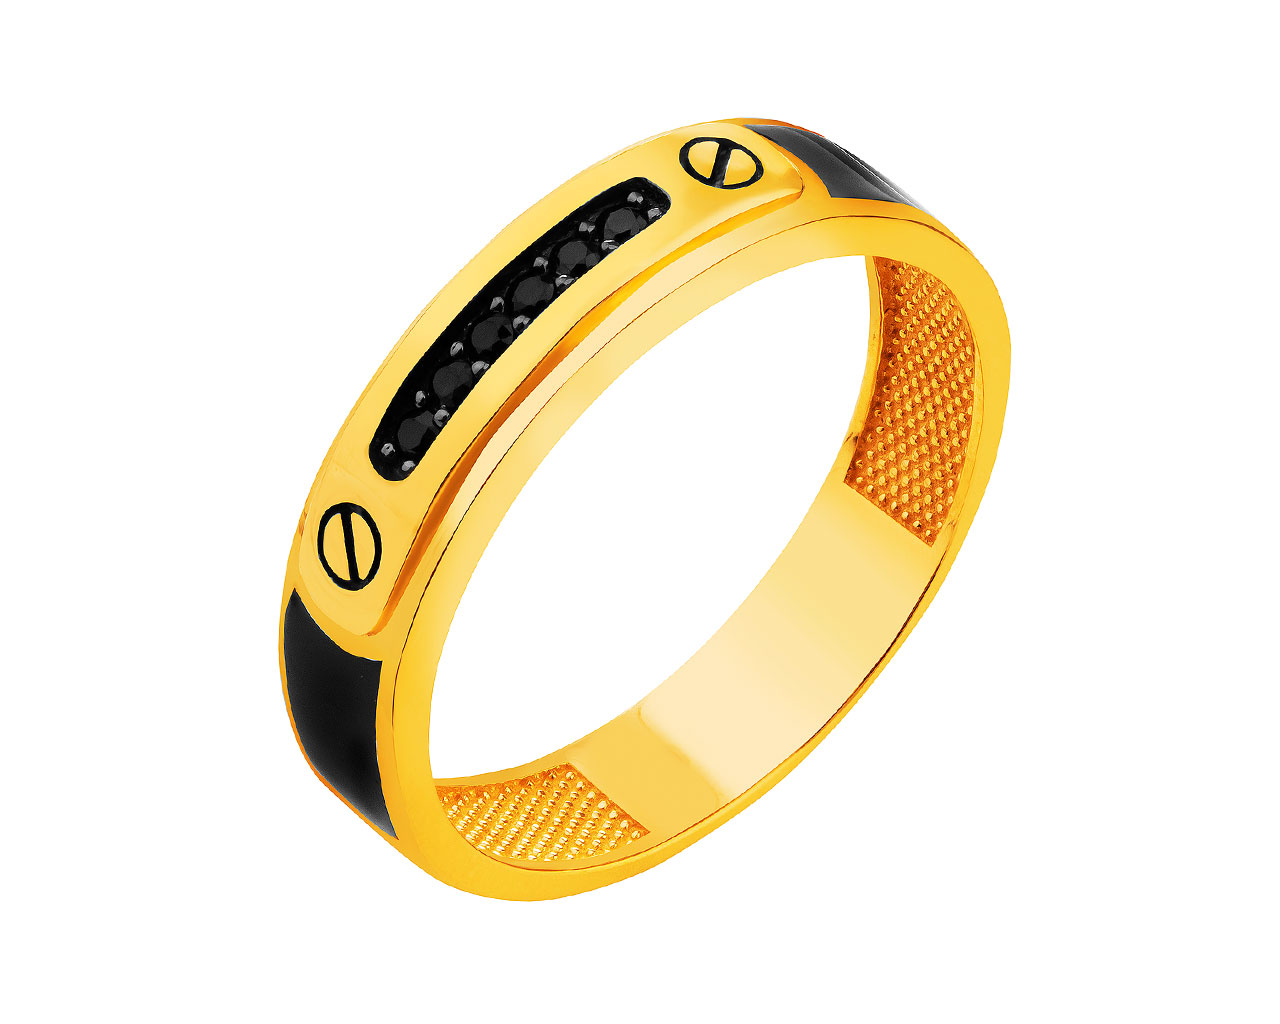 Złoty pierścionek z cyrkoniami i emalią - sygnet